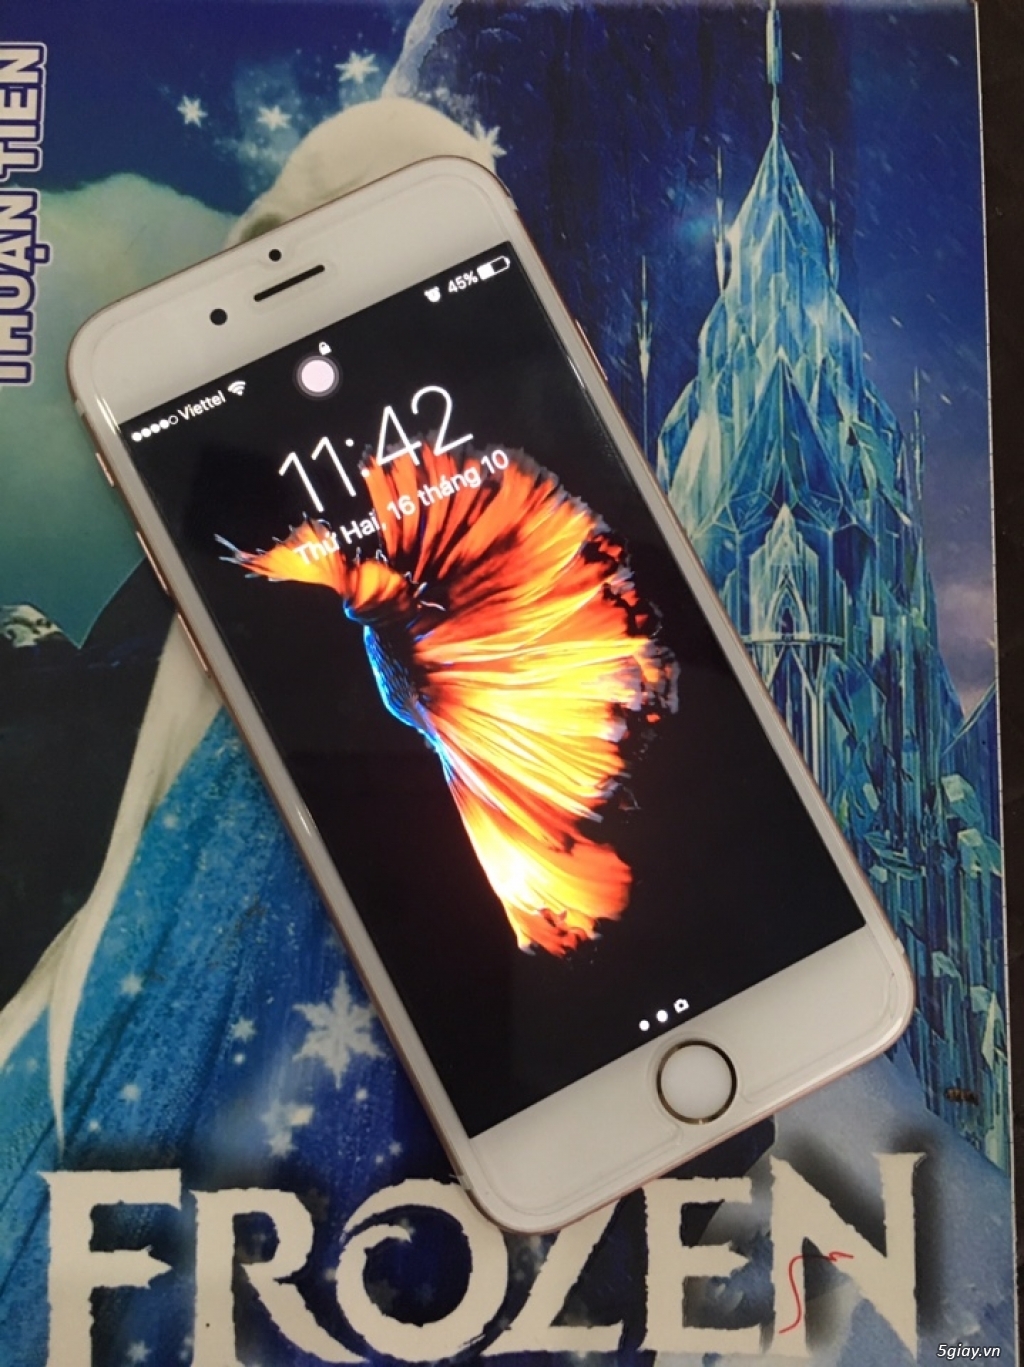 Bán iphone 6s 16gb vàng hồng QT máy mới 99% rất đẹp